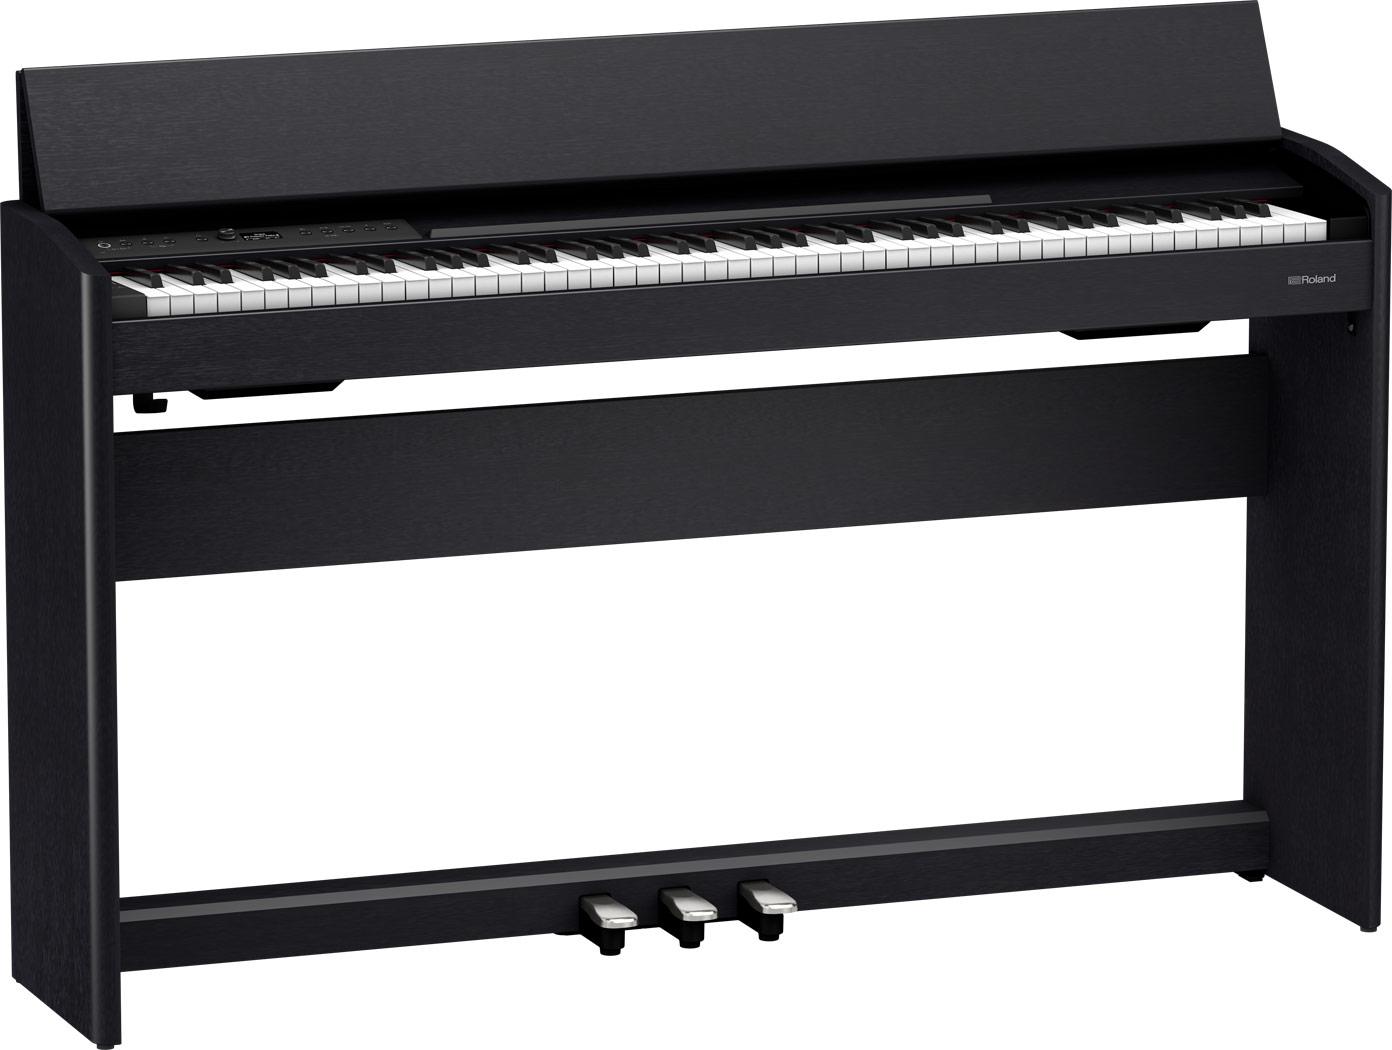 Roland F-701 Digital Piano - $1399.99 - DC Piano Company